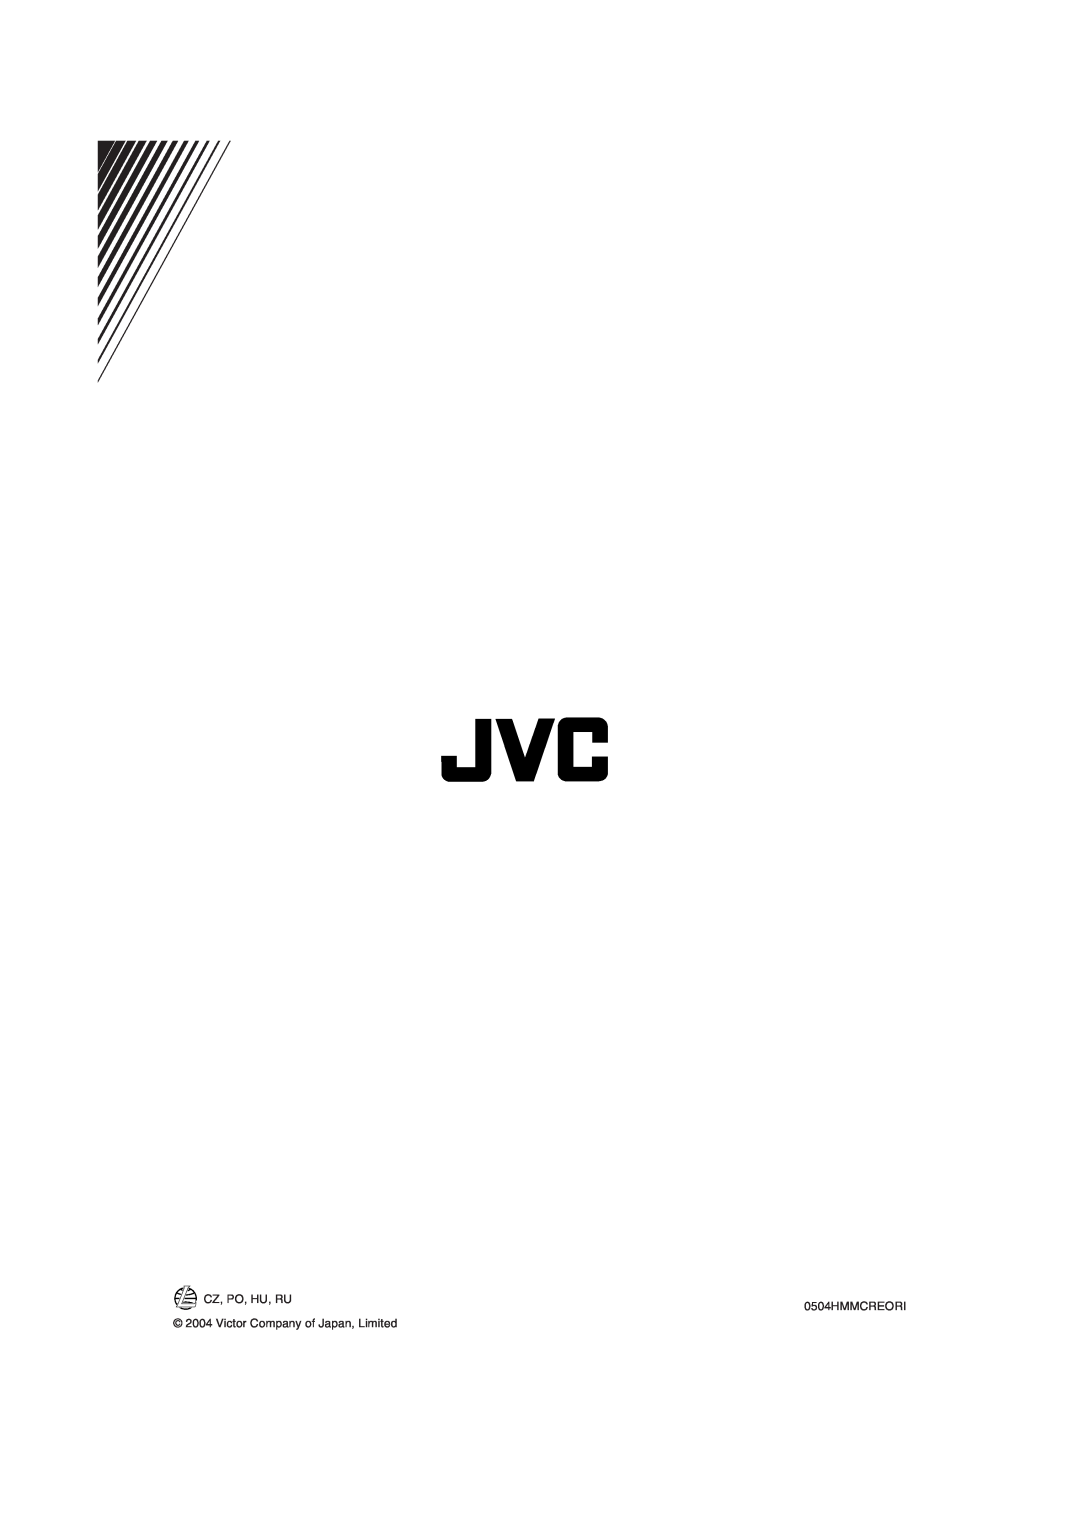 JVC MX-KB11, MX-KB22 manual CZ, PO, HU, RU 0504HMMCREORI, Victor Company of Japan, Limited 